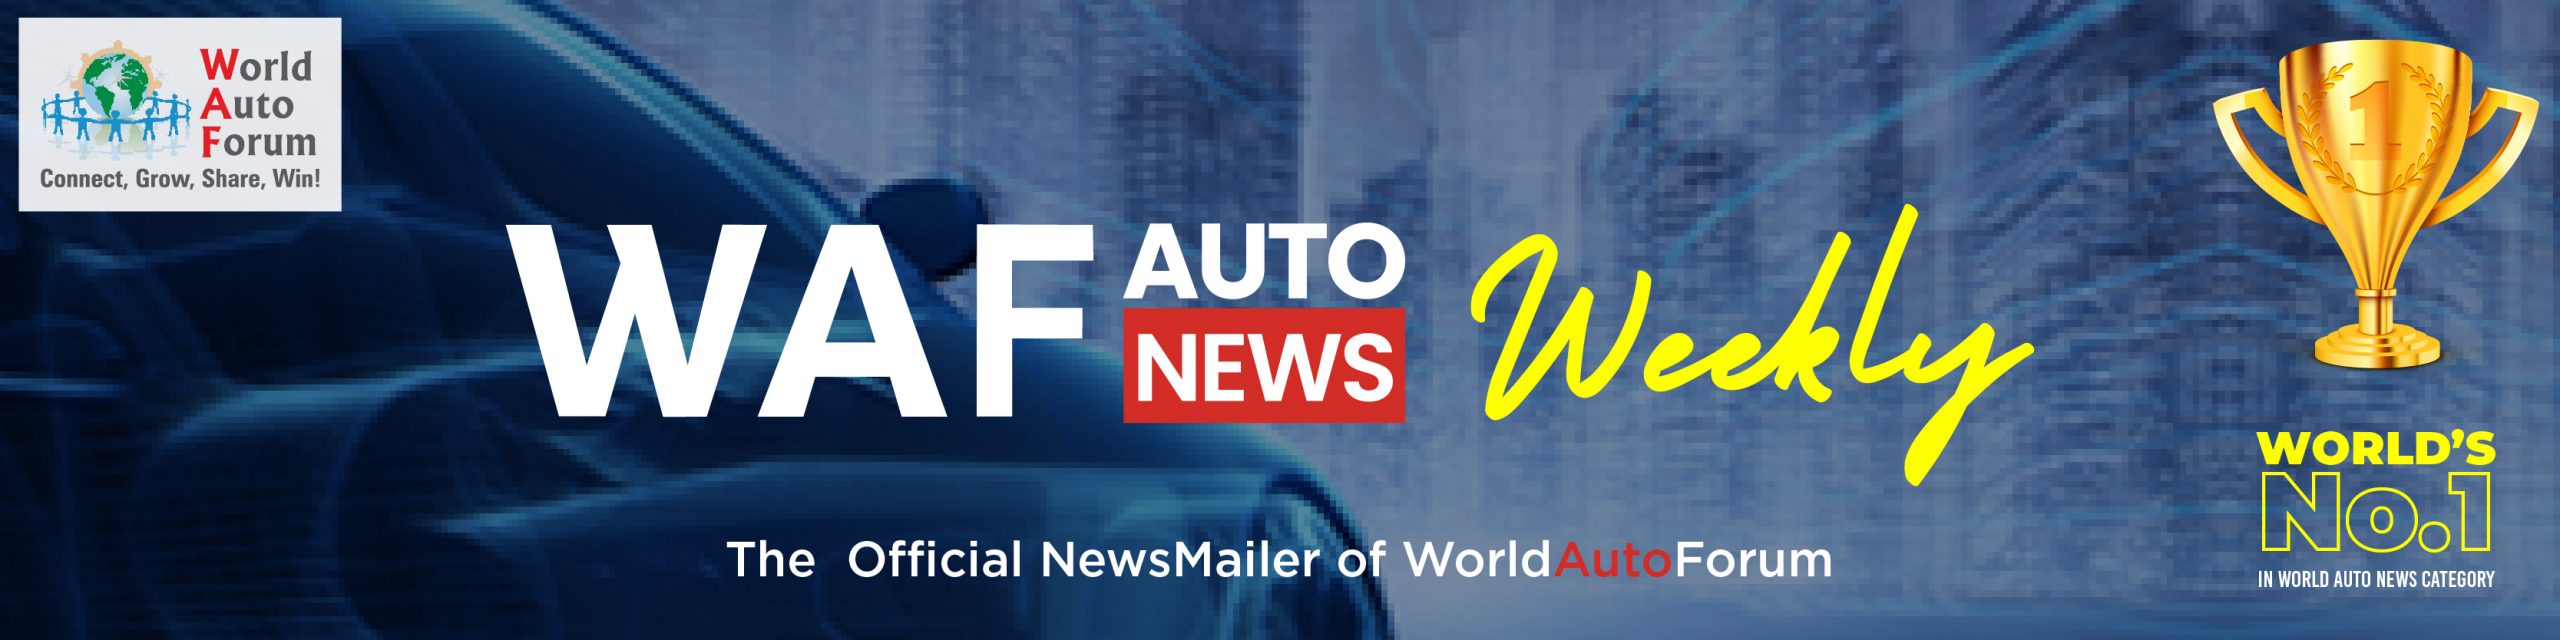 WAF Auto News